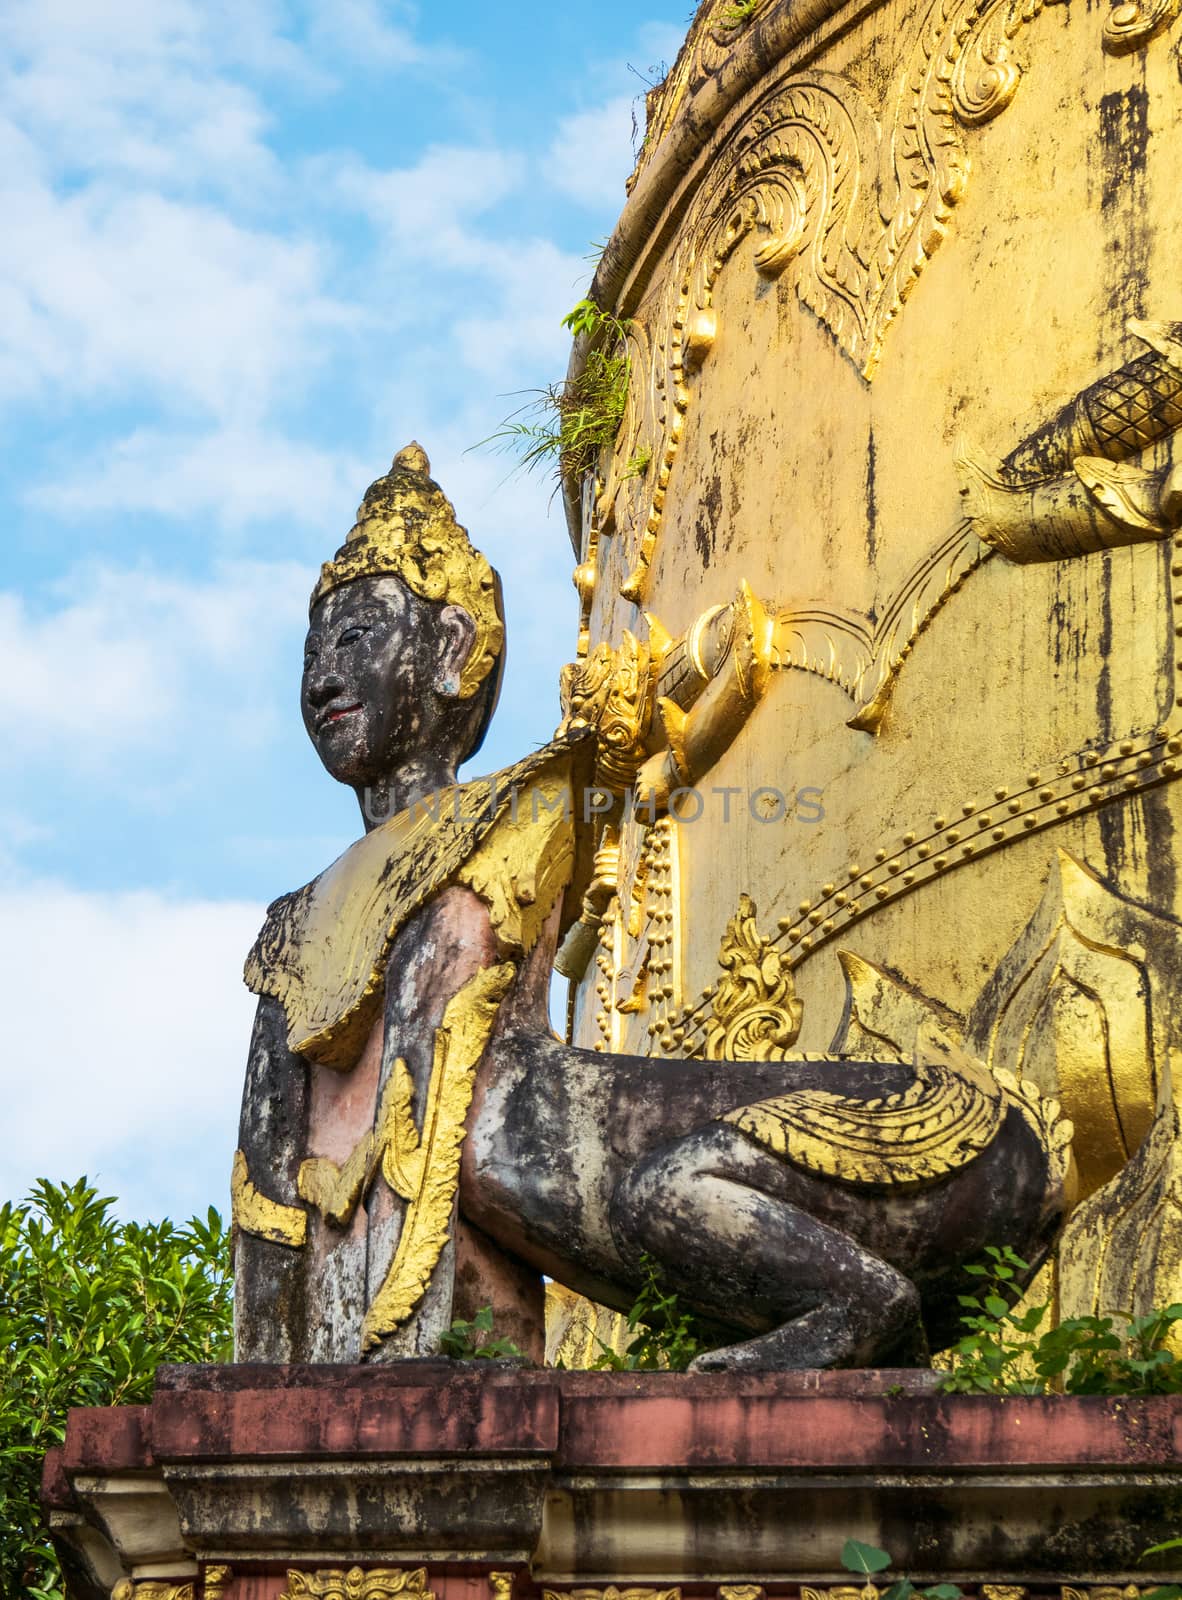 Temple detail in Yangon, Myanmar by epixx